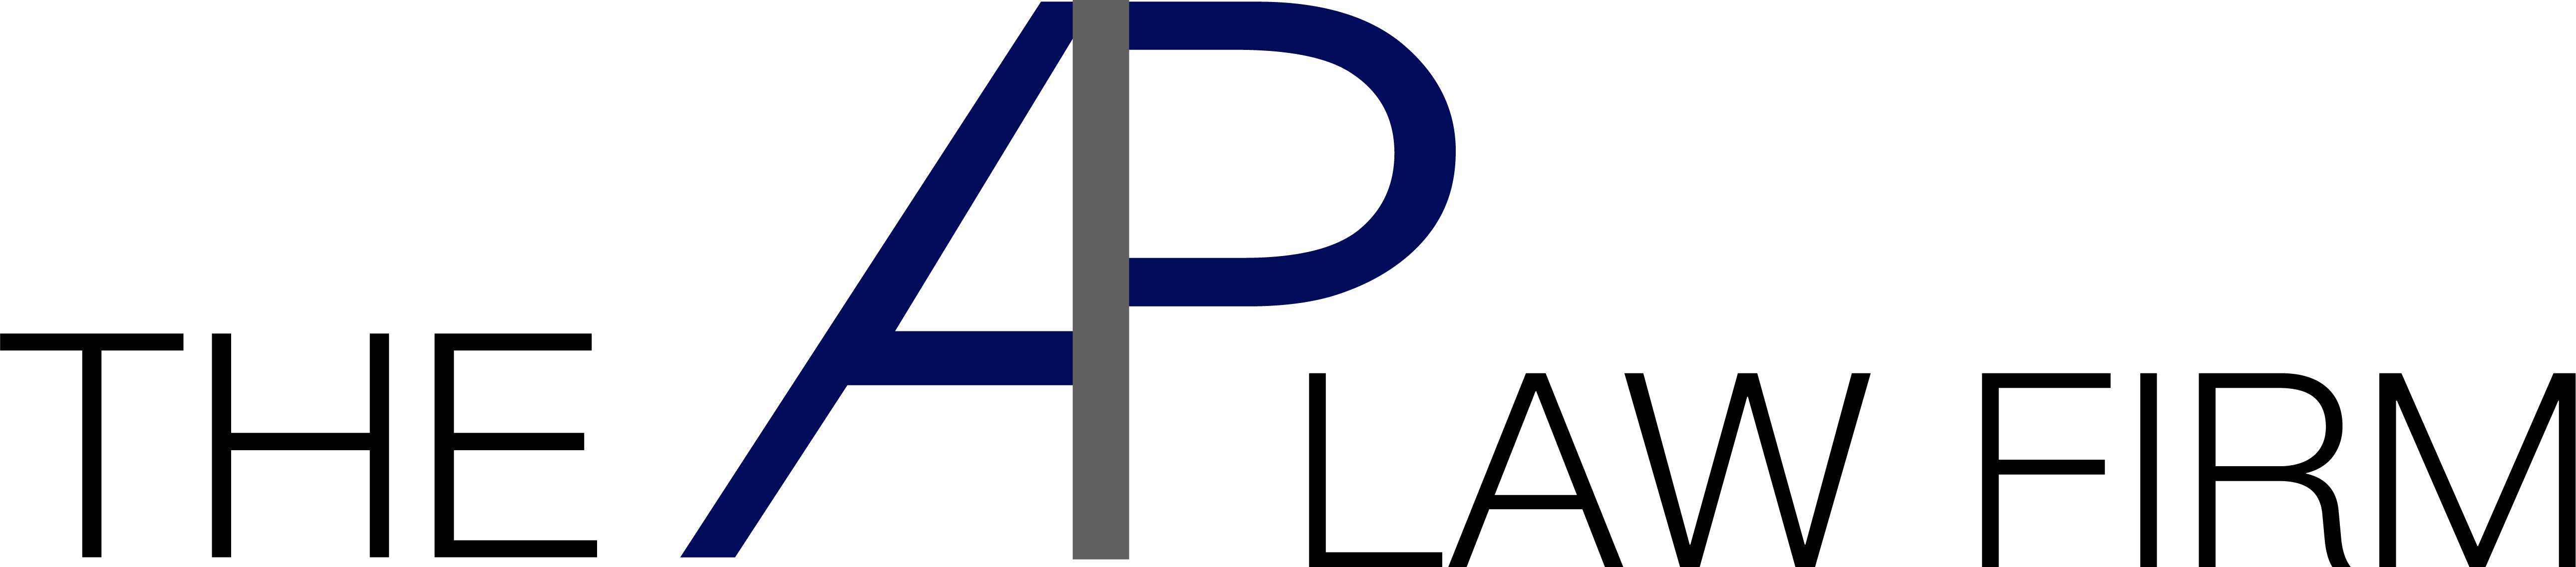 Arreola Park logo